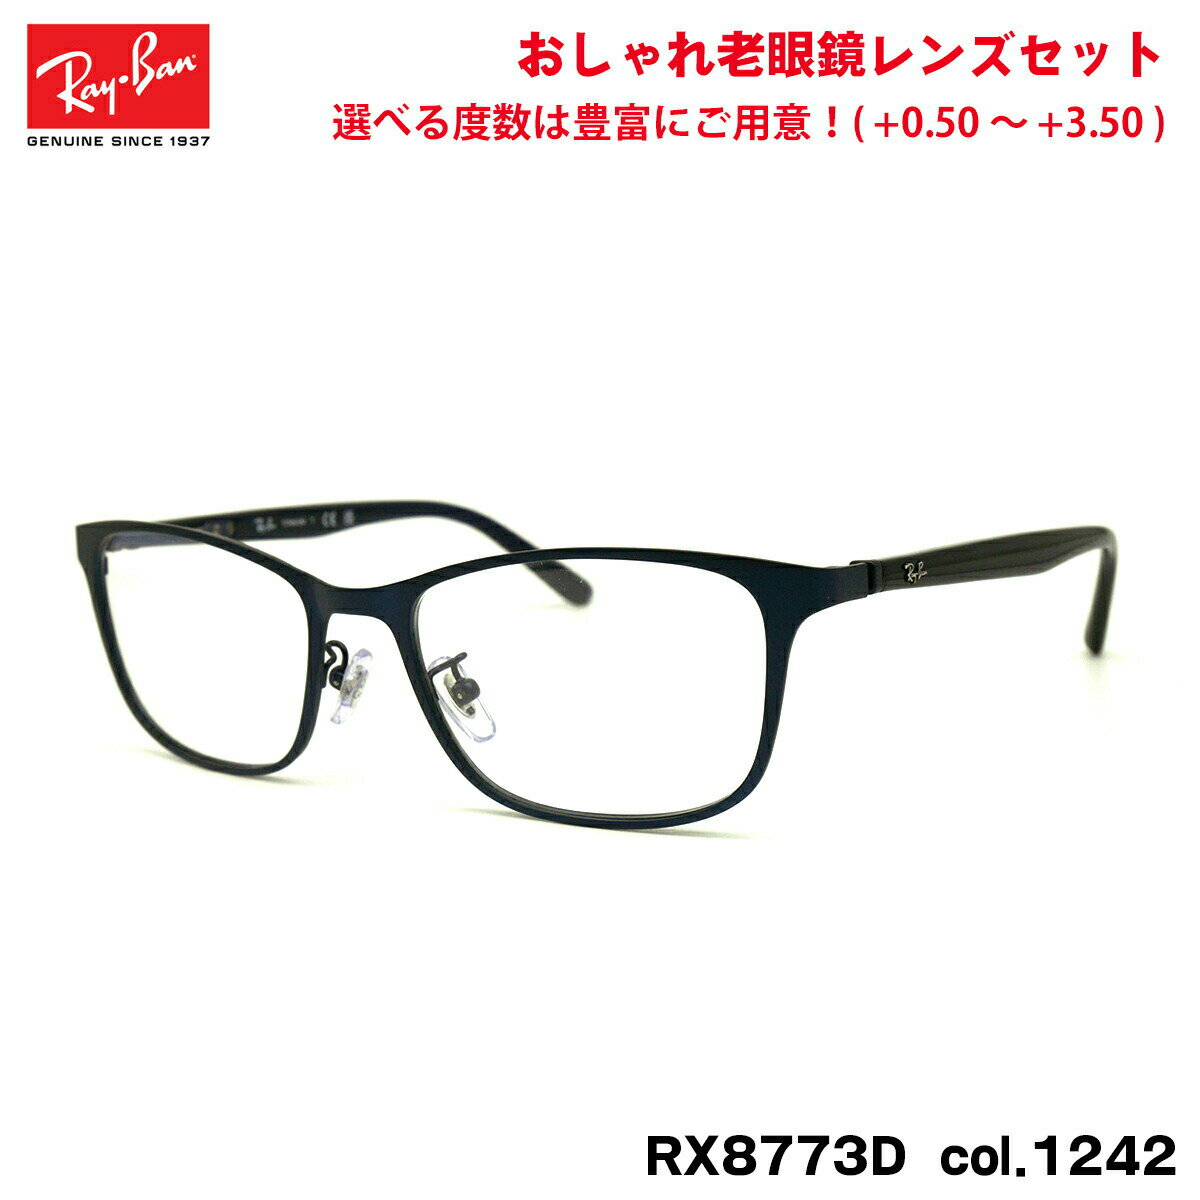 レイバン 老眼鏡 RX8773D (RB8773D) 1242 53mm Ray-Ban チタン ブルーライトカット UVカット